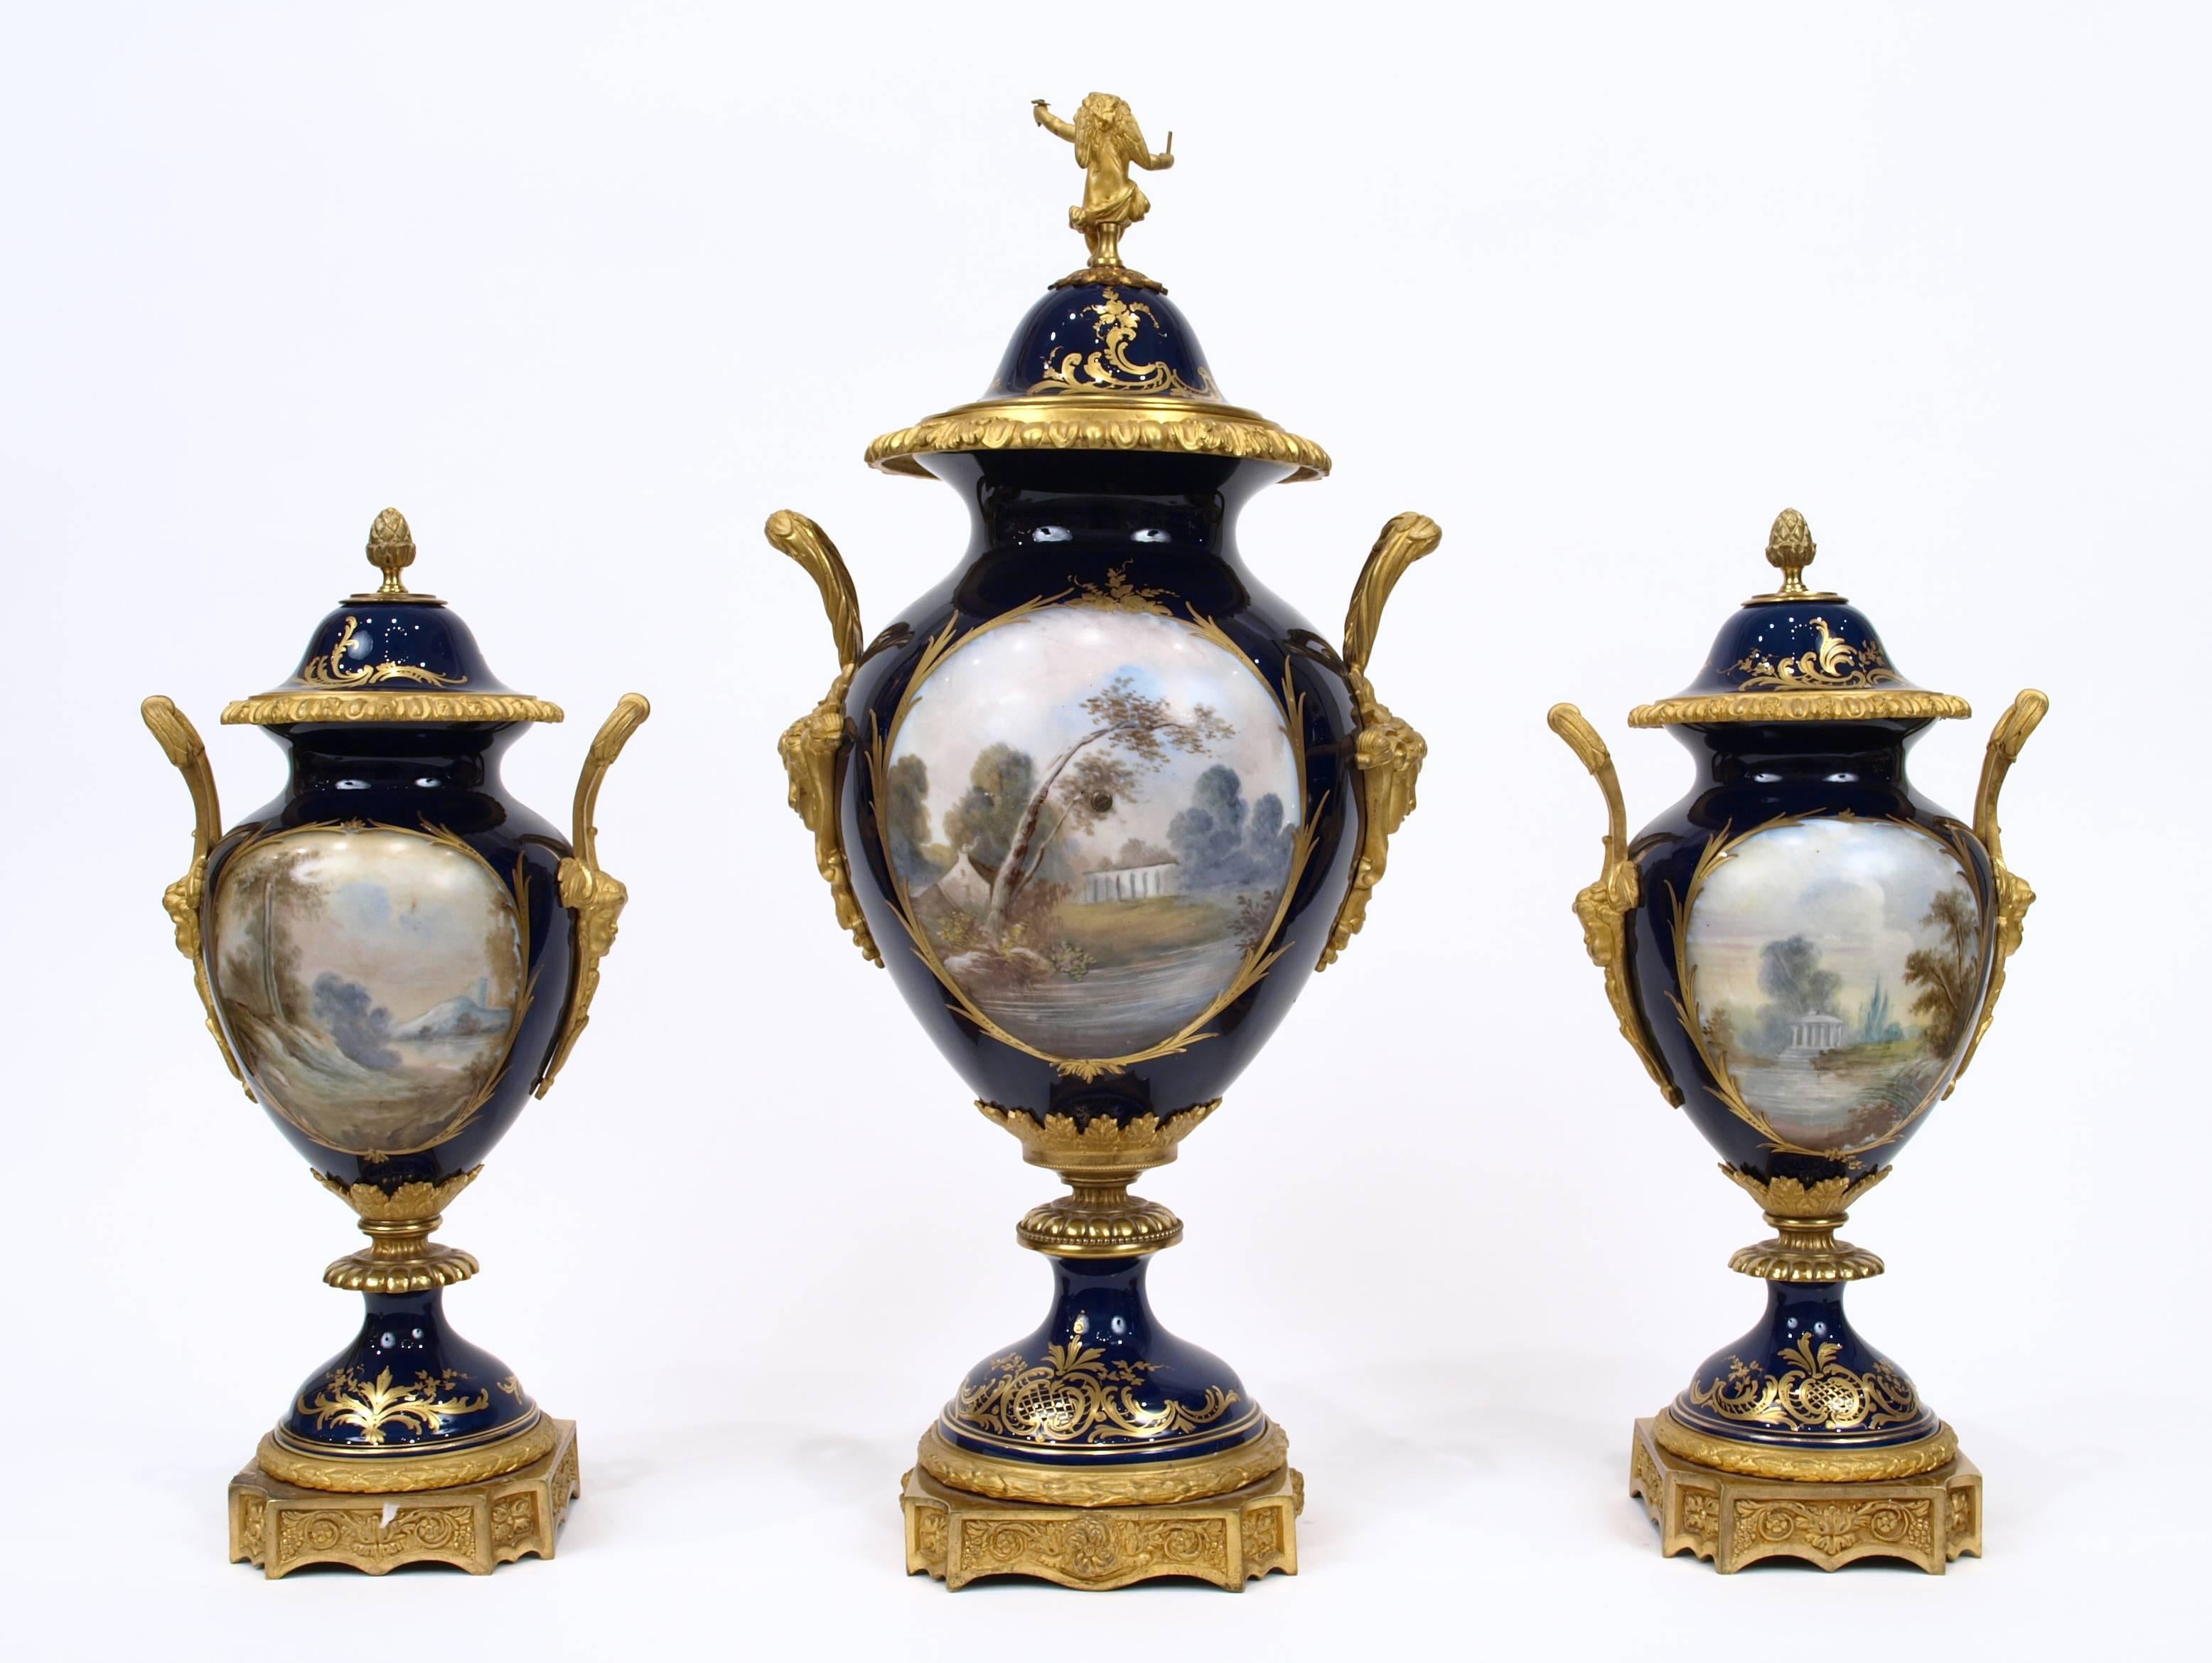 Cette fantastique garniture d'horloge en porcelaine contient trois vases, dont l'un a été monté avec un cadran d'horloge en bronze doré avec des bijoux l'entourant. Les vases sont décorés dans le style des fabricants de porcelaine de Sèvres, avec